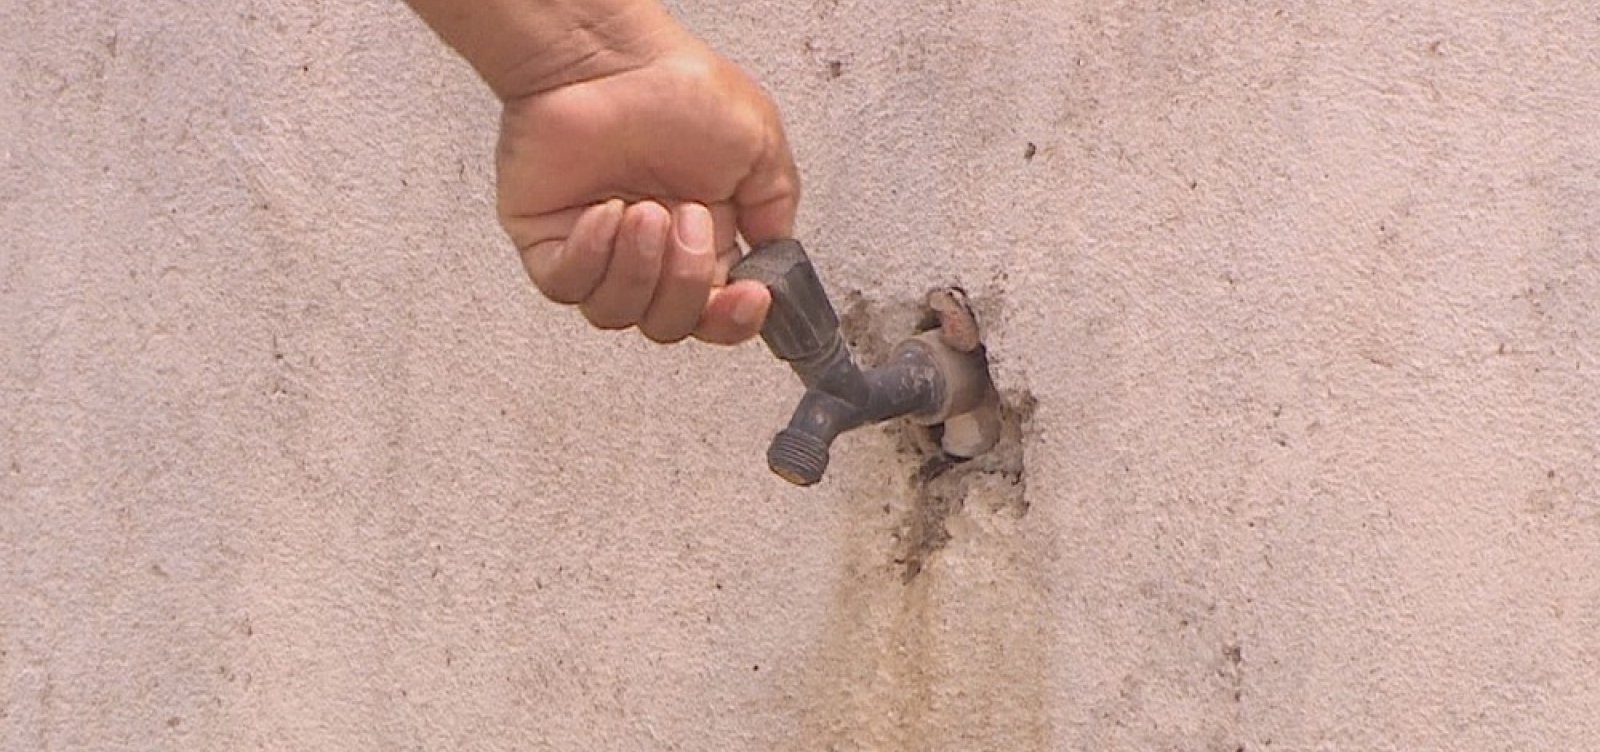  Fornecimento de água será interrompido em bairros de Salvador neste domingo